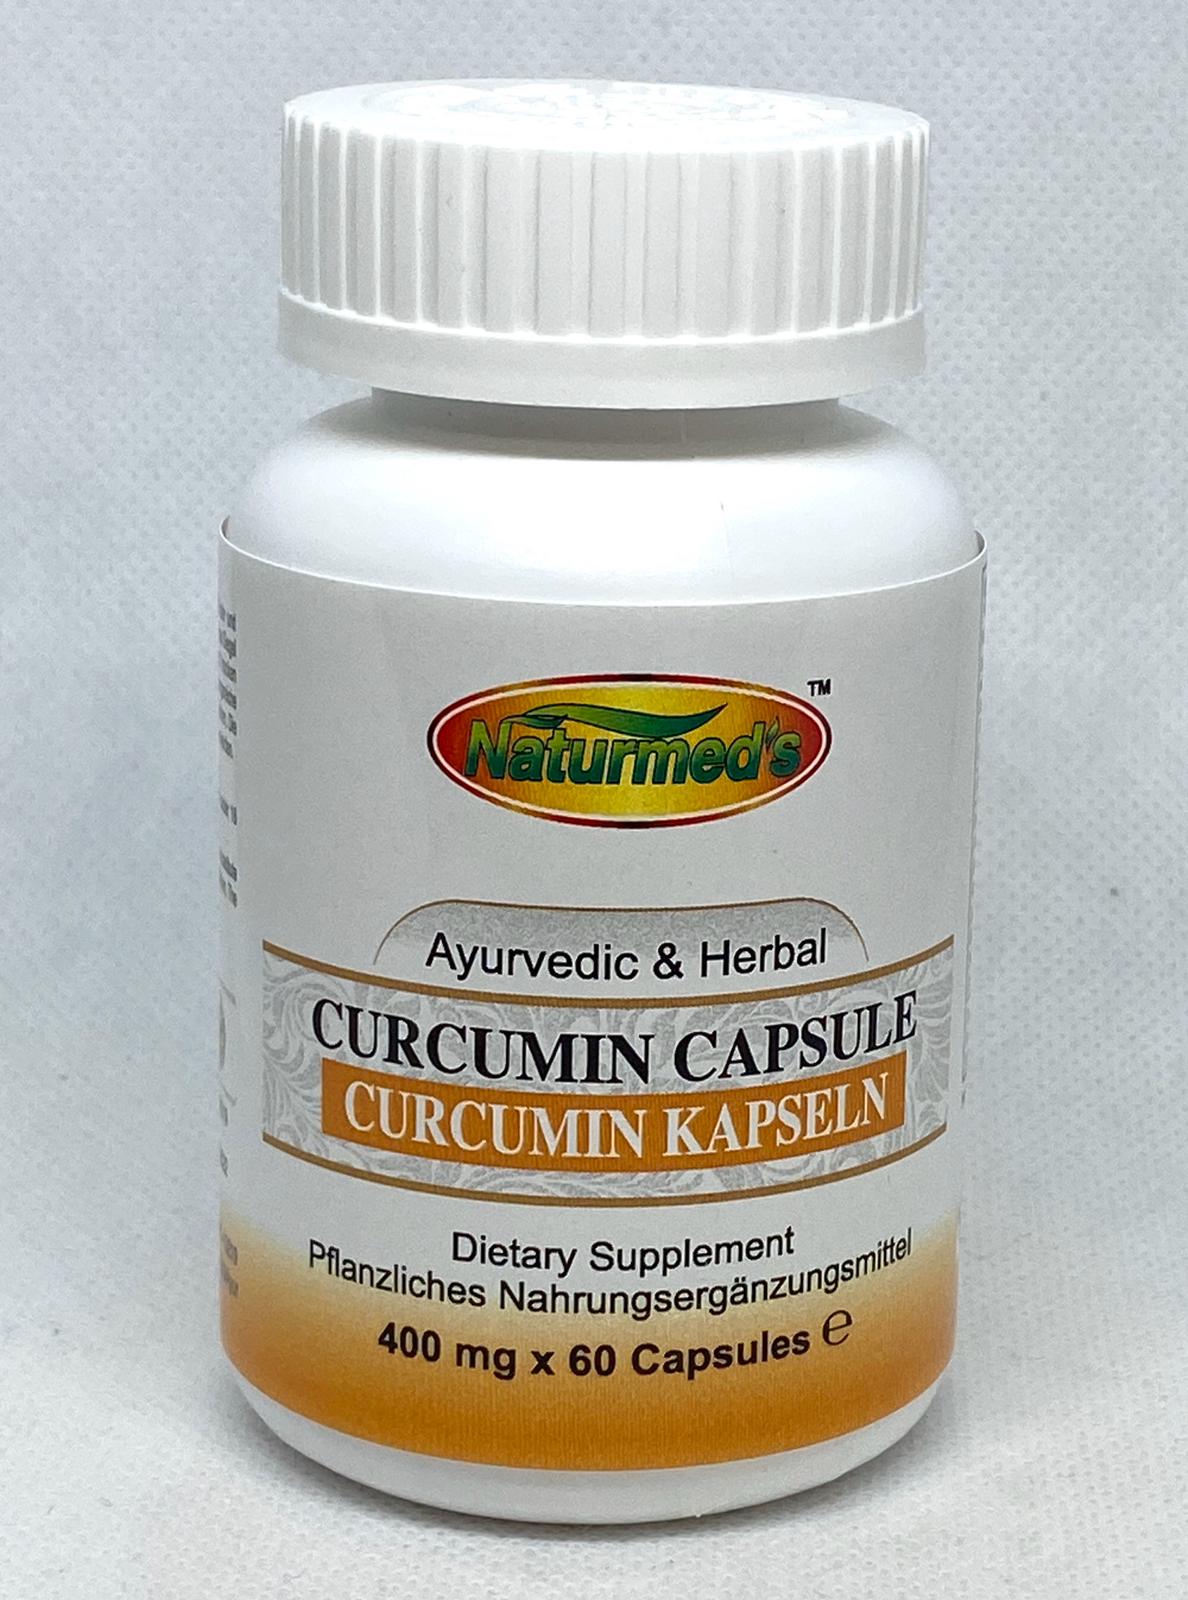 Curcumin-Kapseln